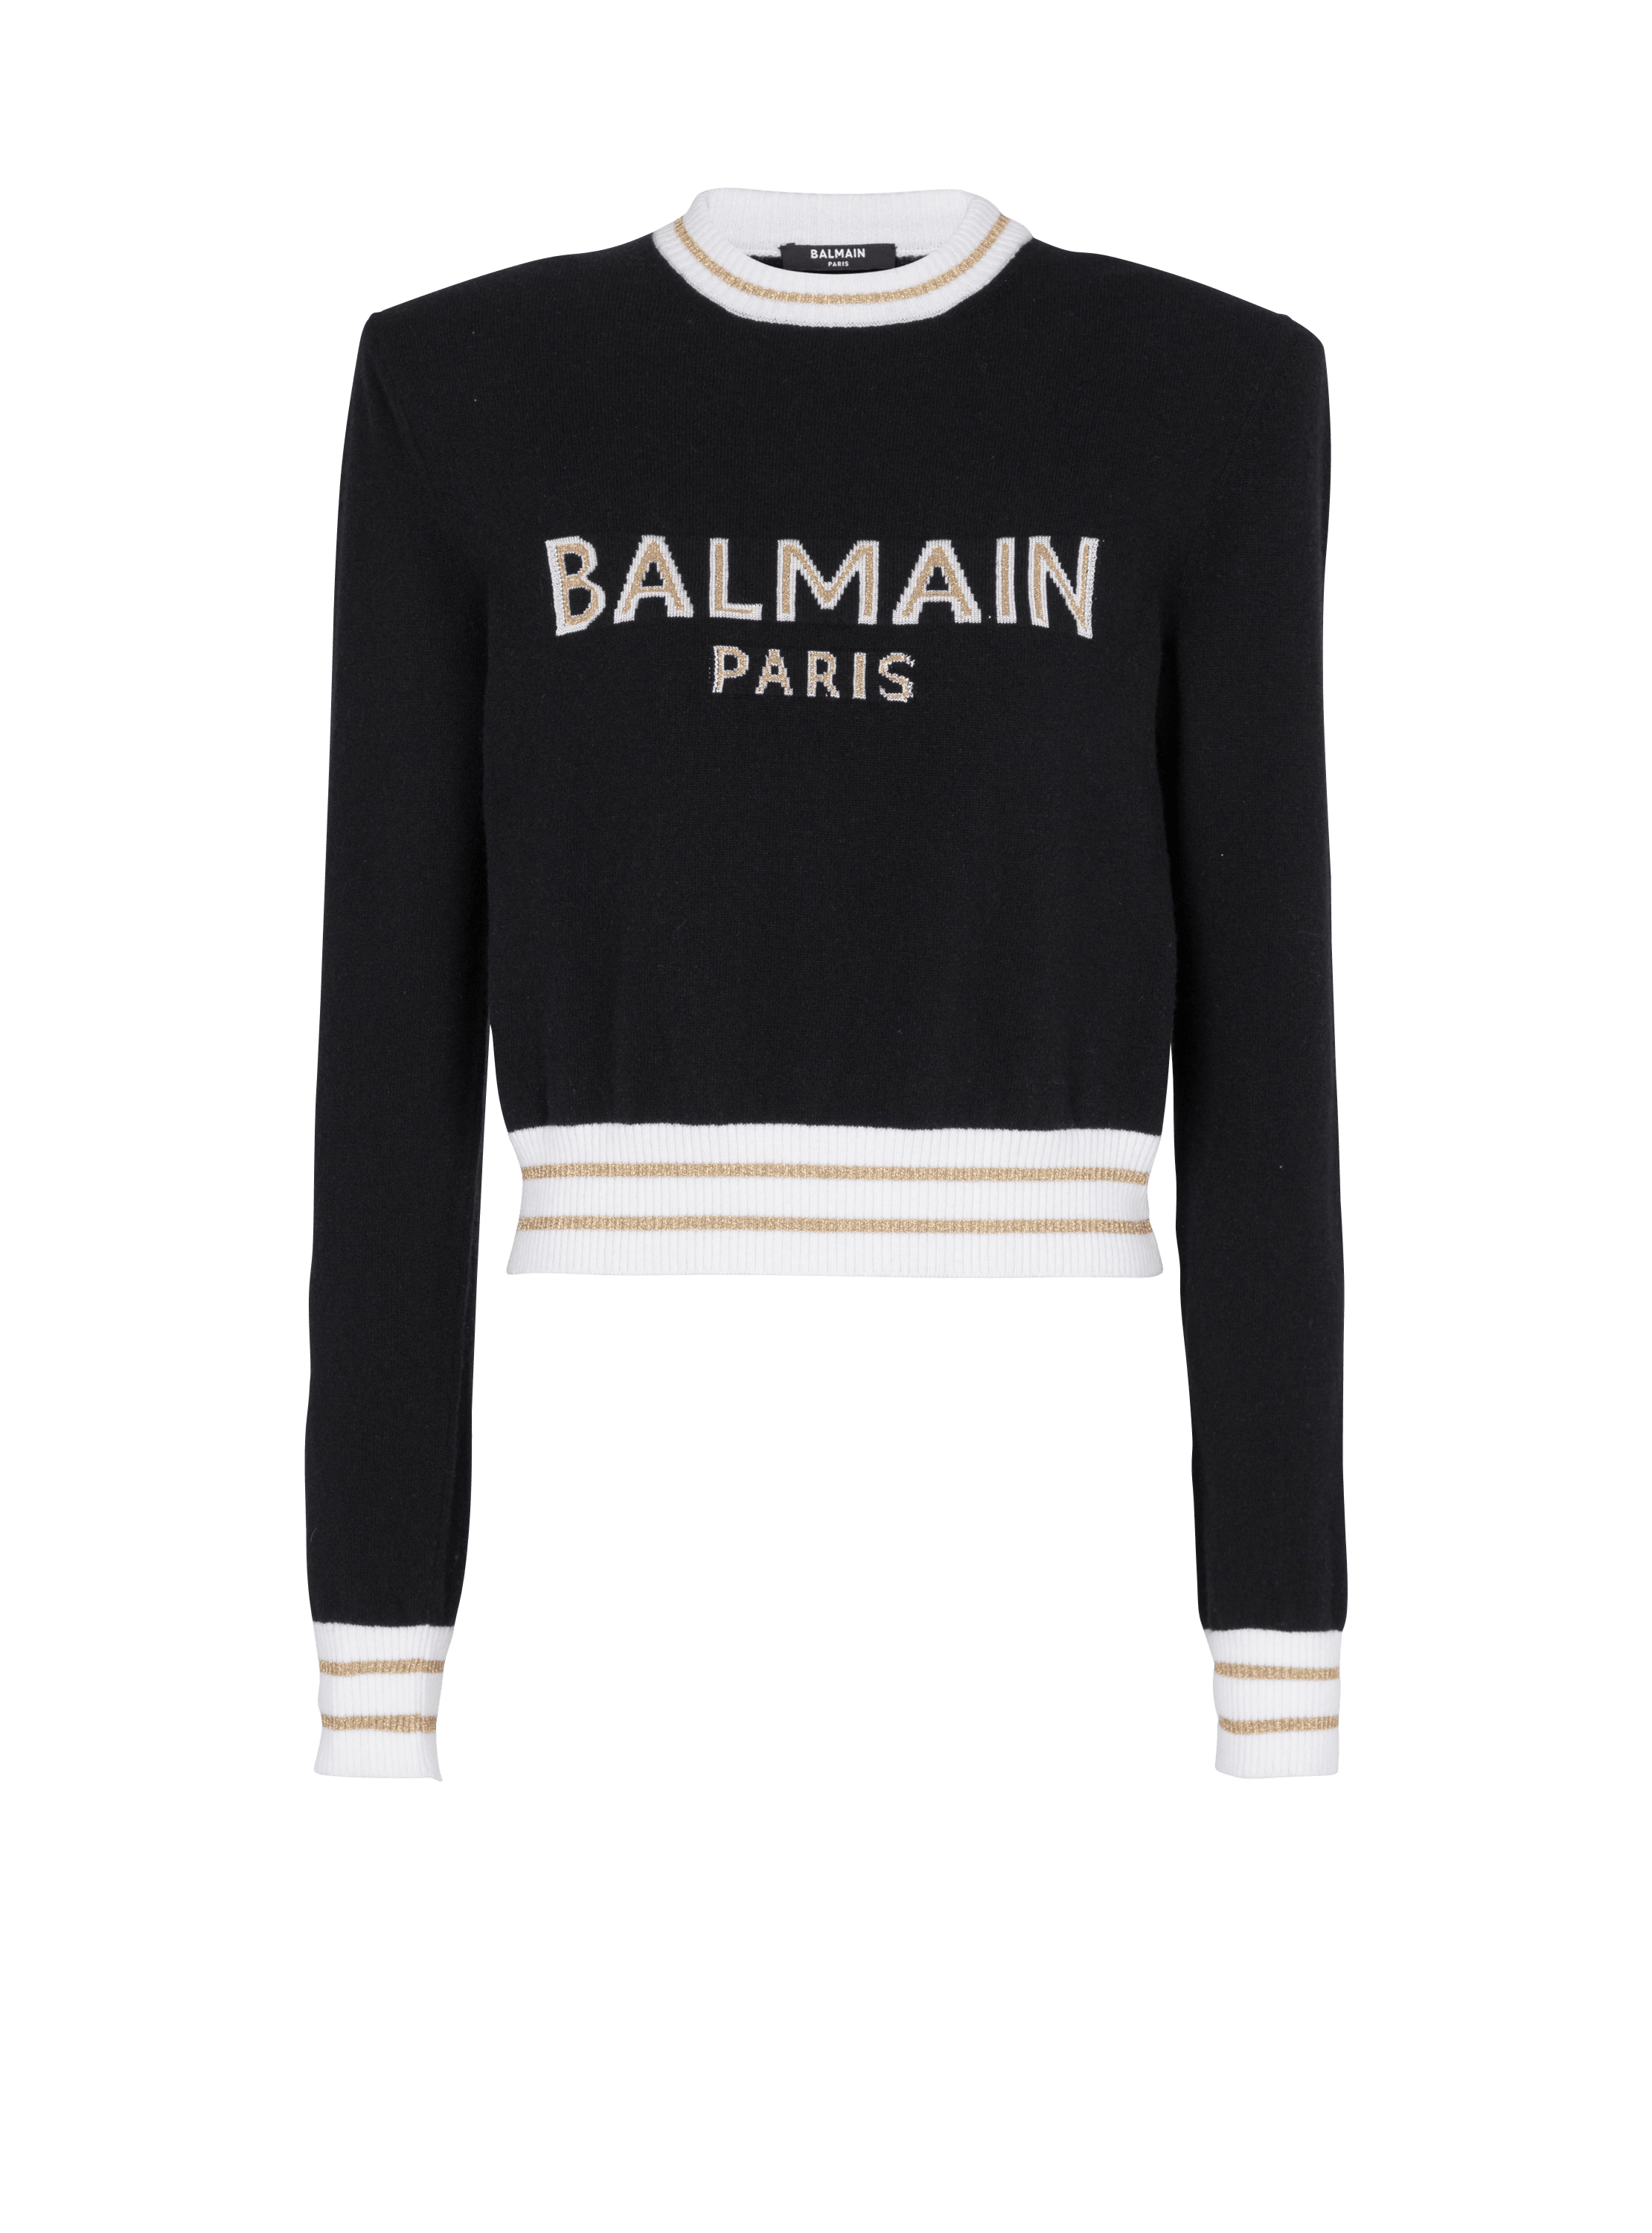 Balmain巴尔曼标志短款羊毛运动衫